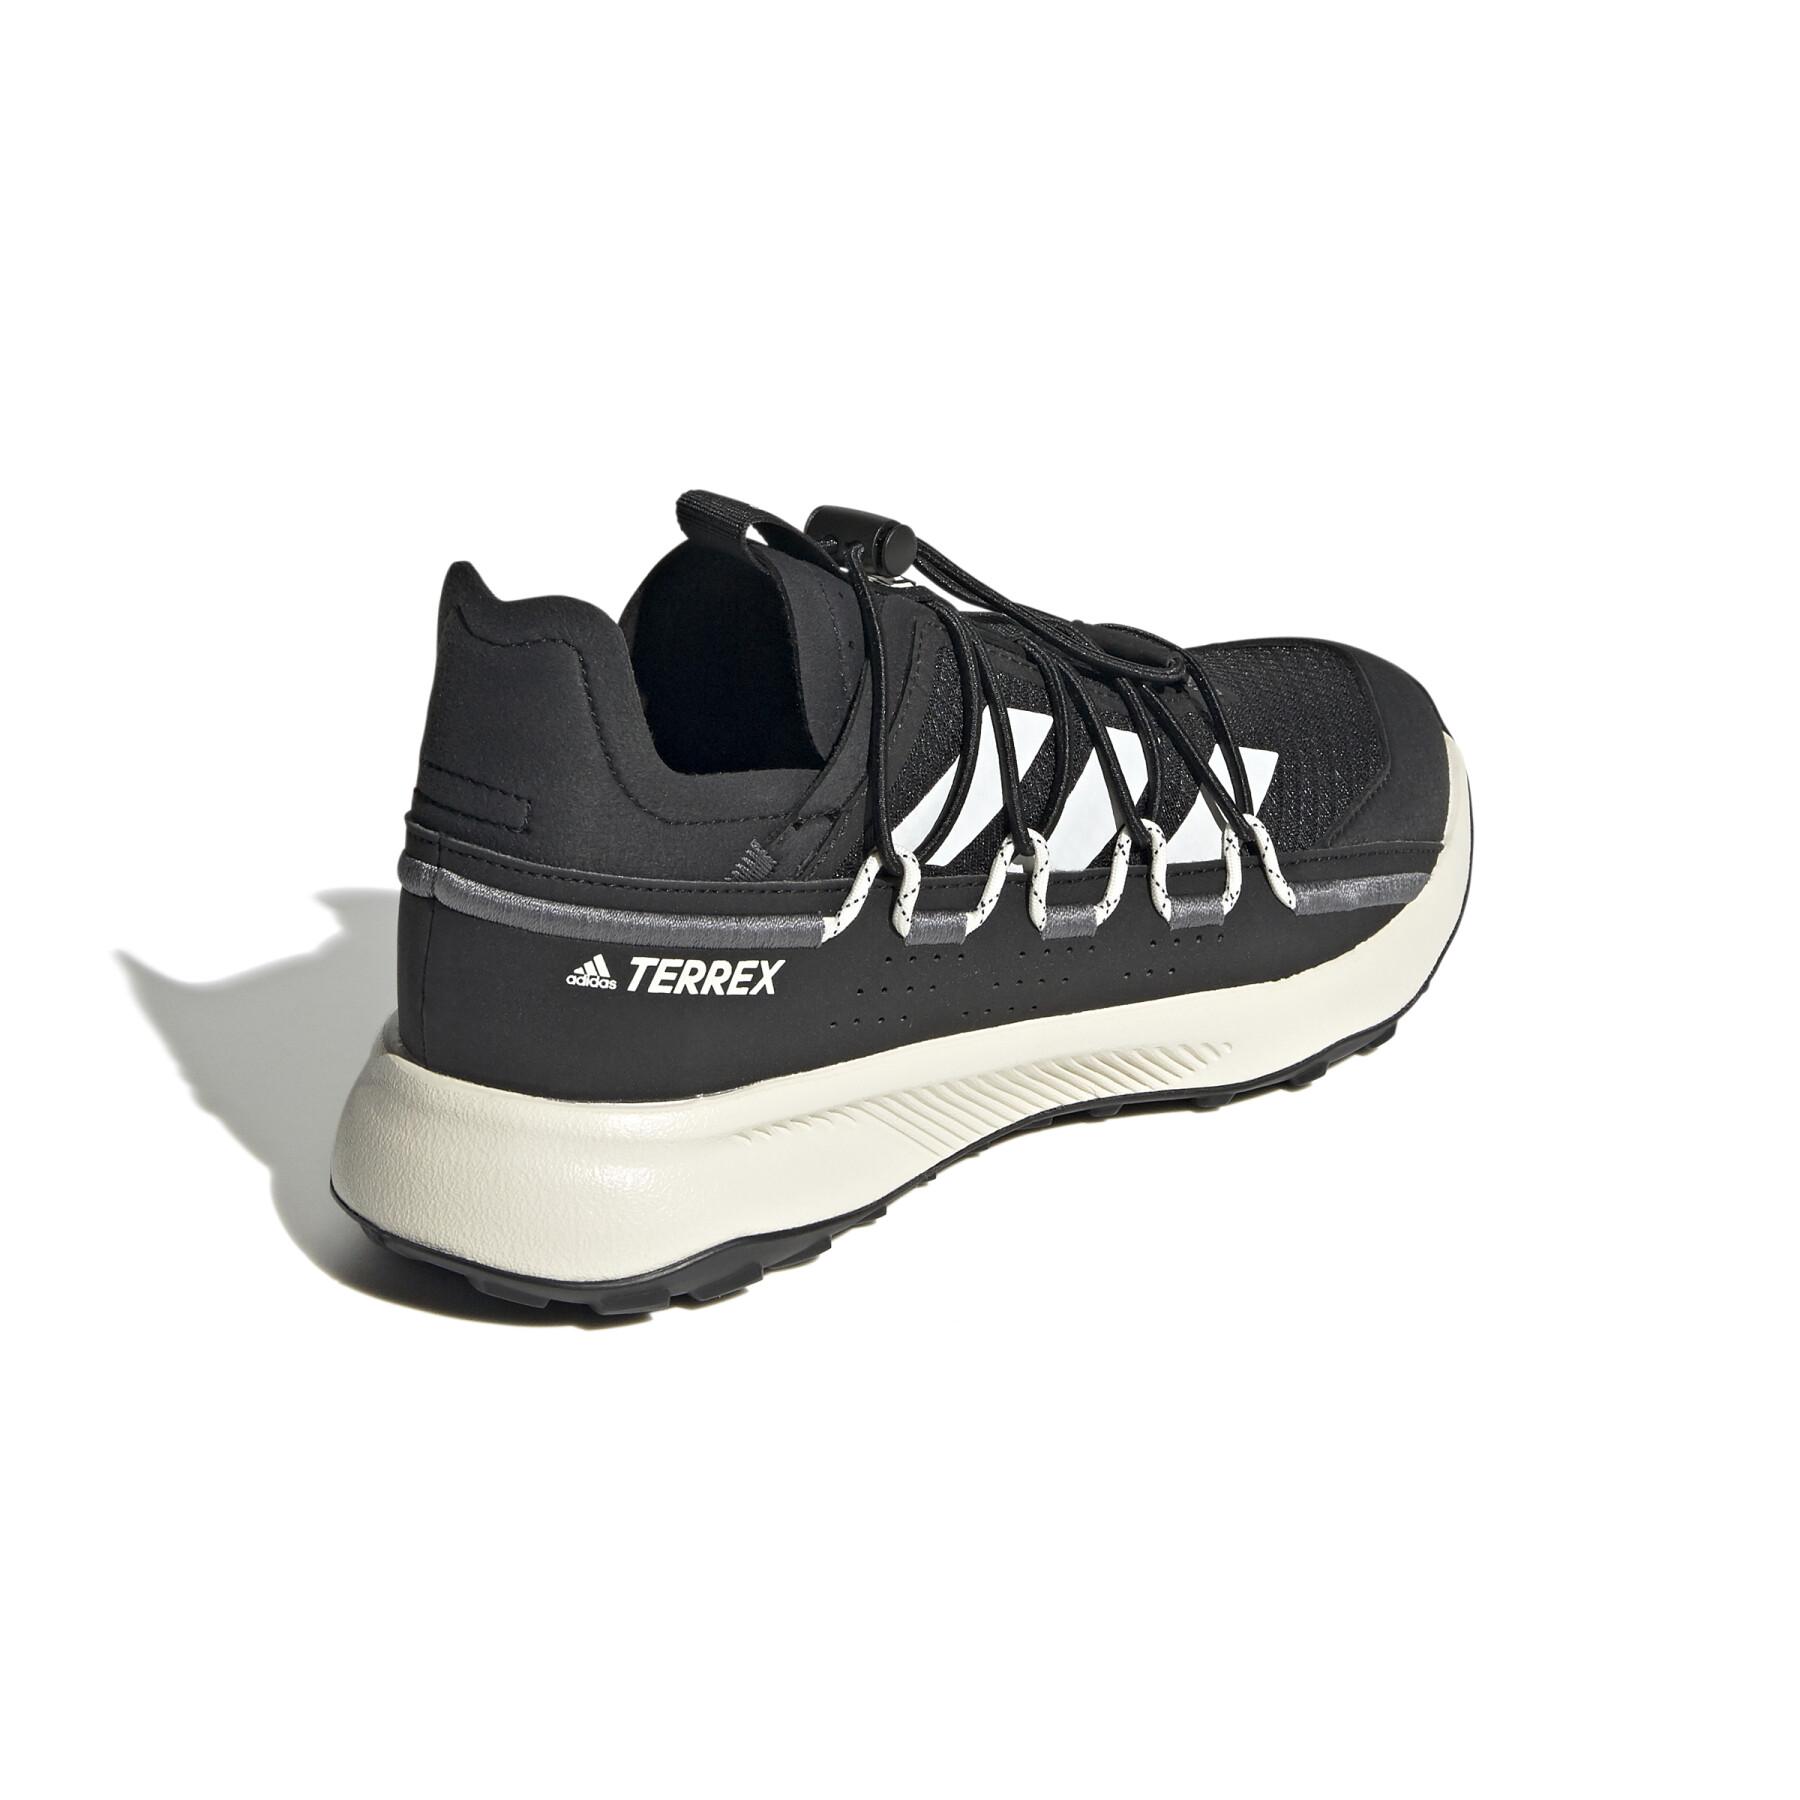 Women's hiking shoes adidas Voyage Terrex Voyager 21